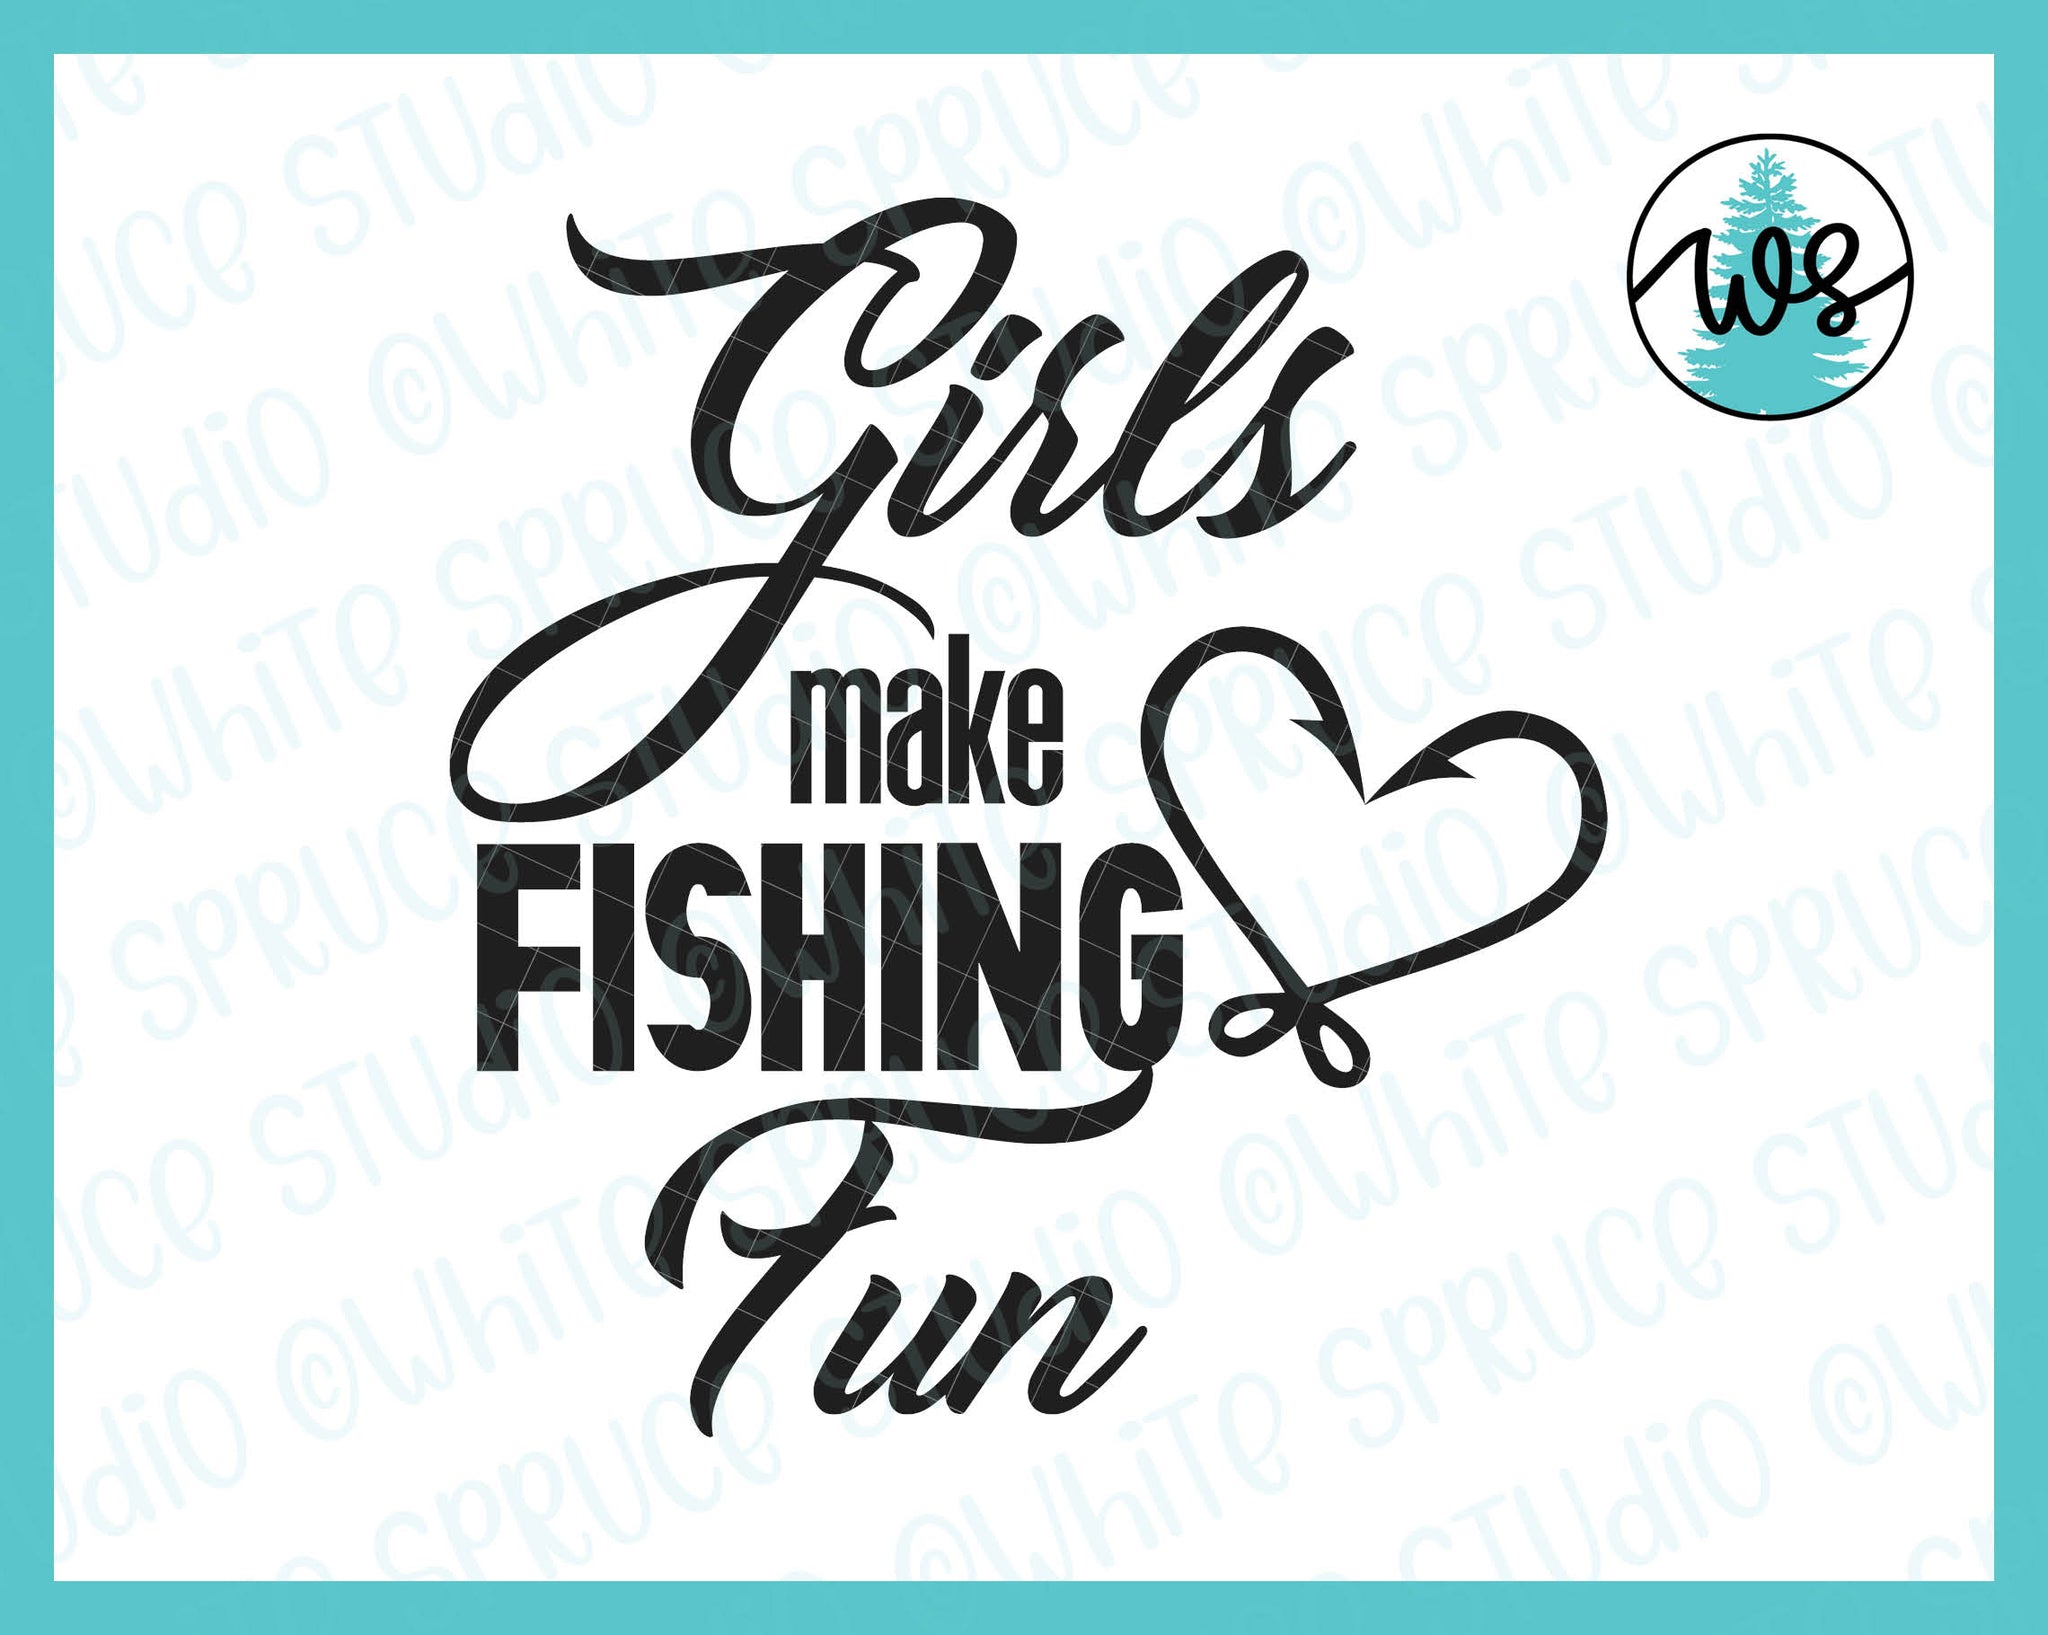 Bite Me Fish Hook SVG - Fishing SVG - Sayings SVG - Fish Hook Svg -  Humorous Saying - Digital Download - Bite Me Png - Fishing Dxf